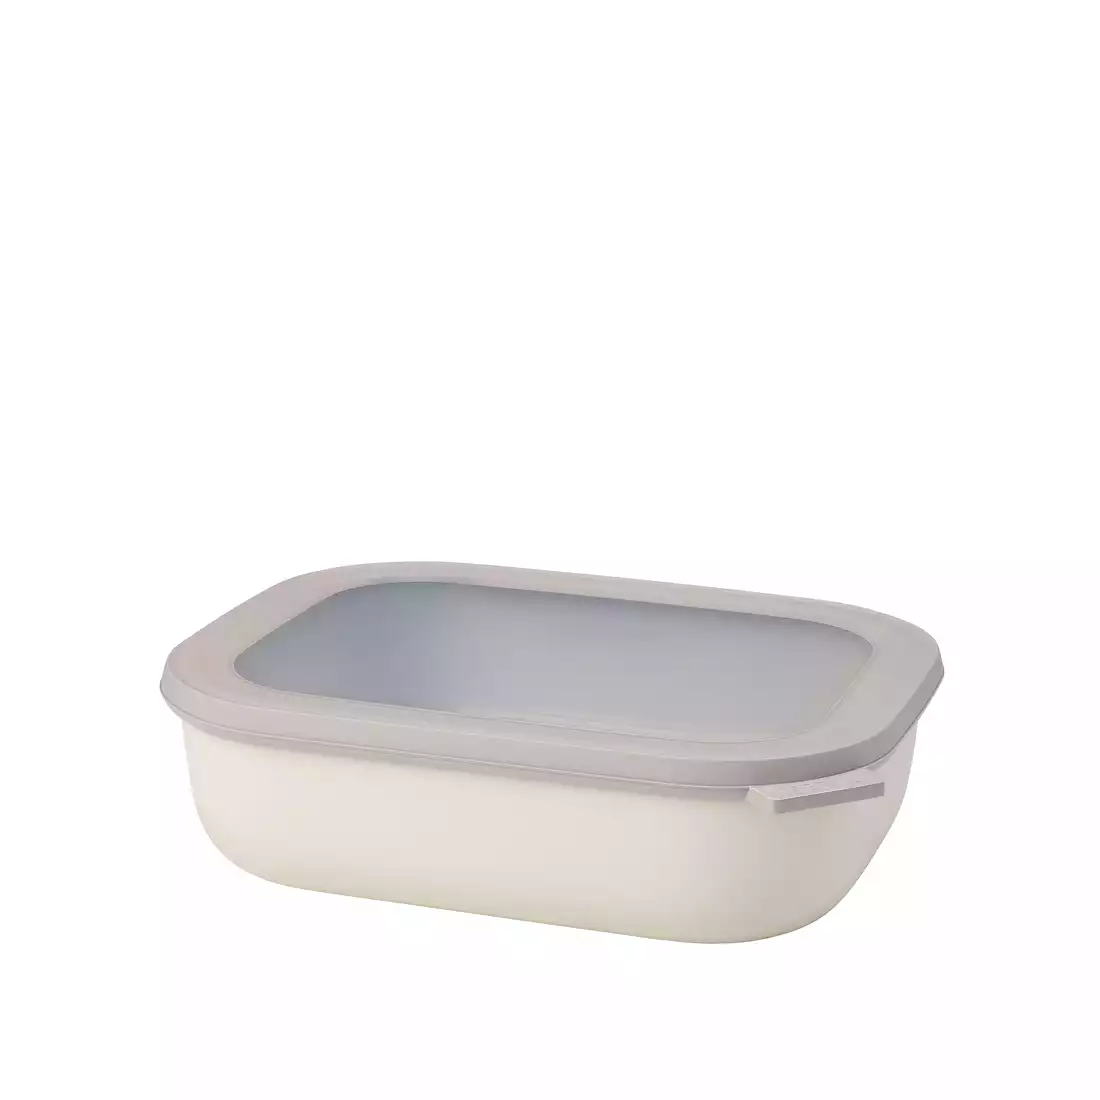 MEPAL CIRQULA rectangular bowl 2000 ml, nordic white